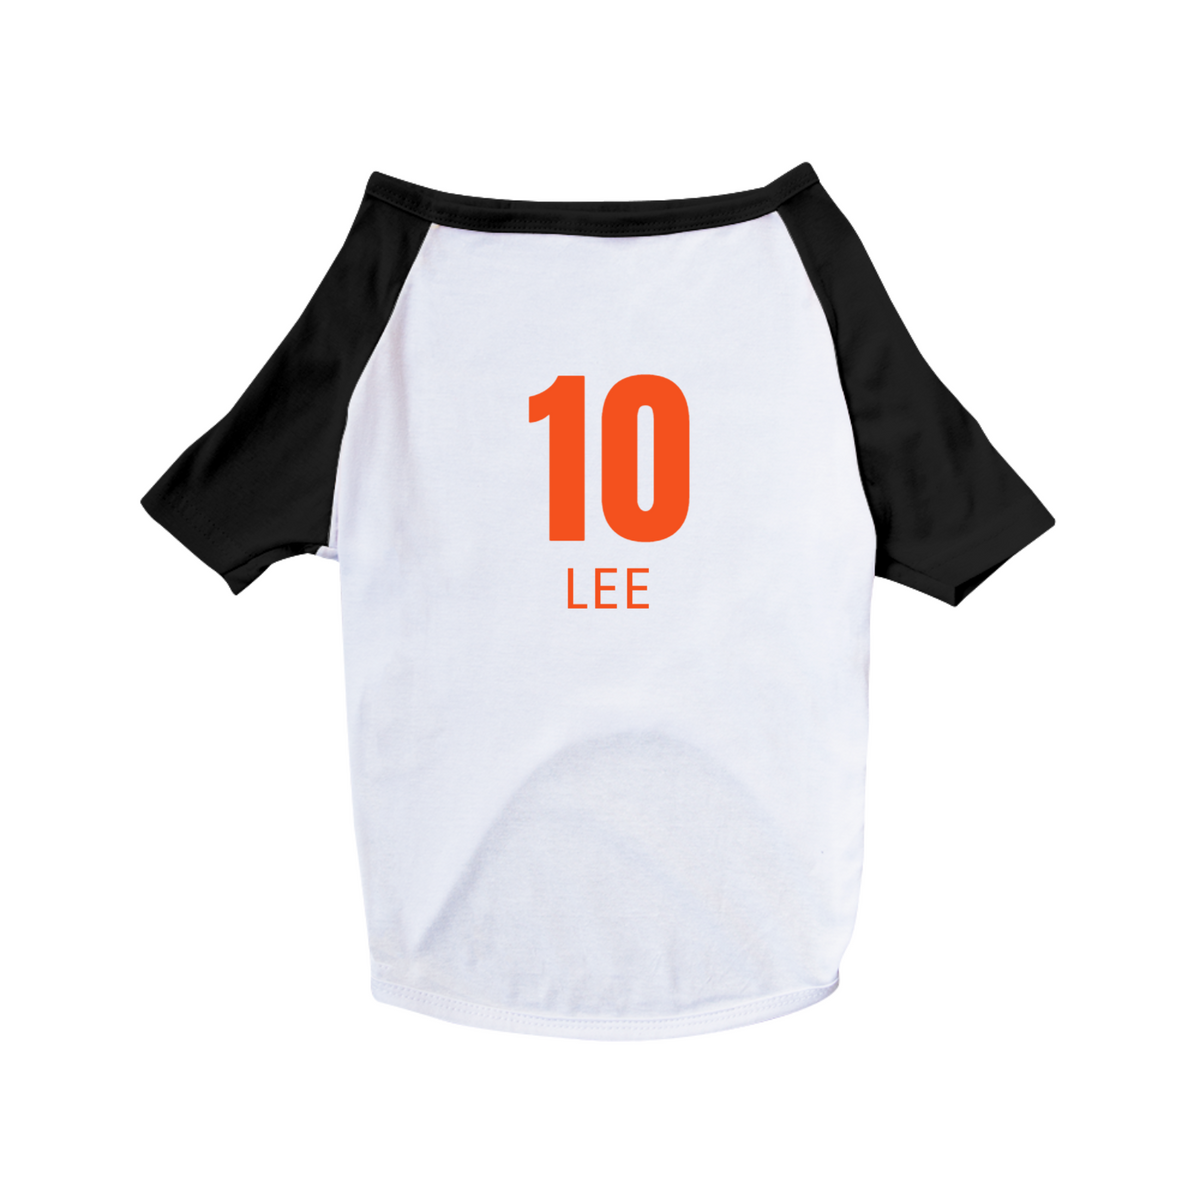 Nome do produto: Camisa 10 LEE (Para Pets)